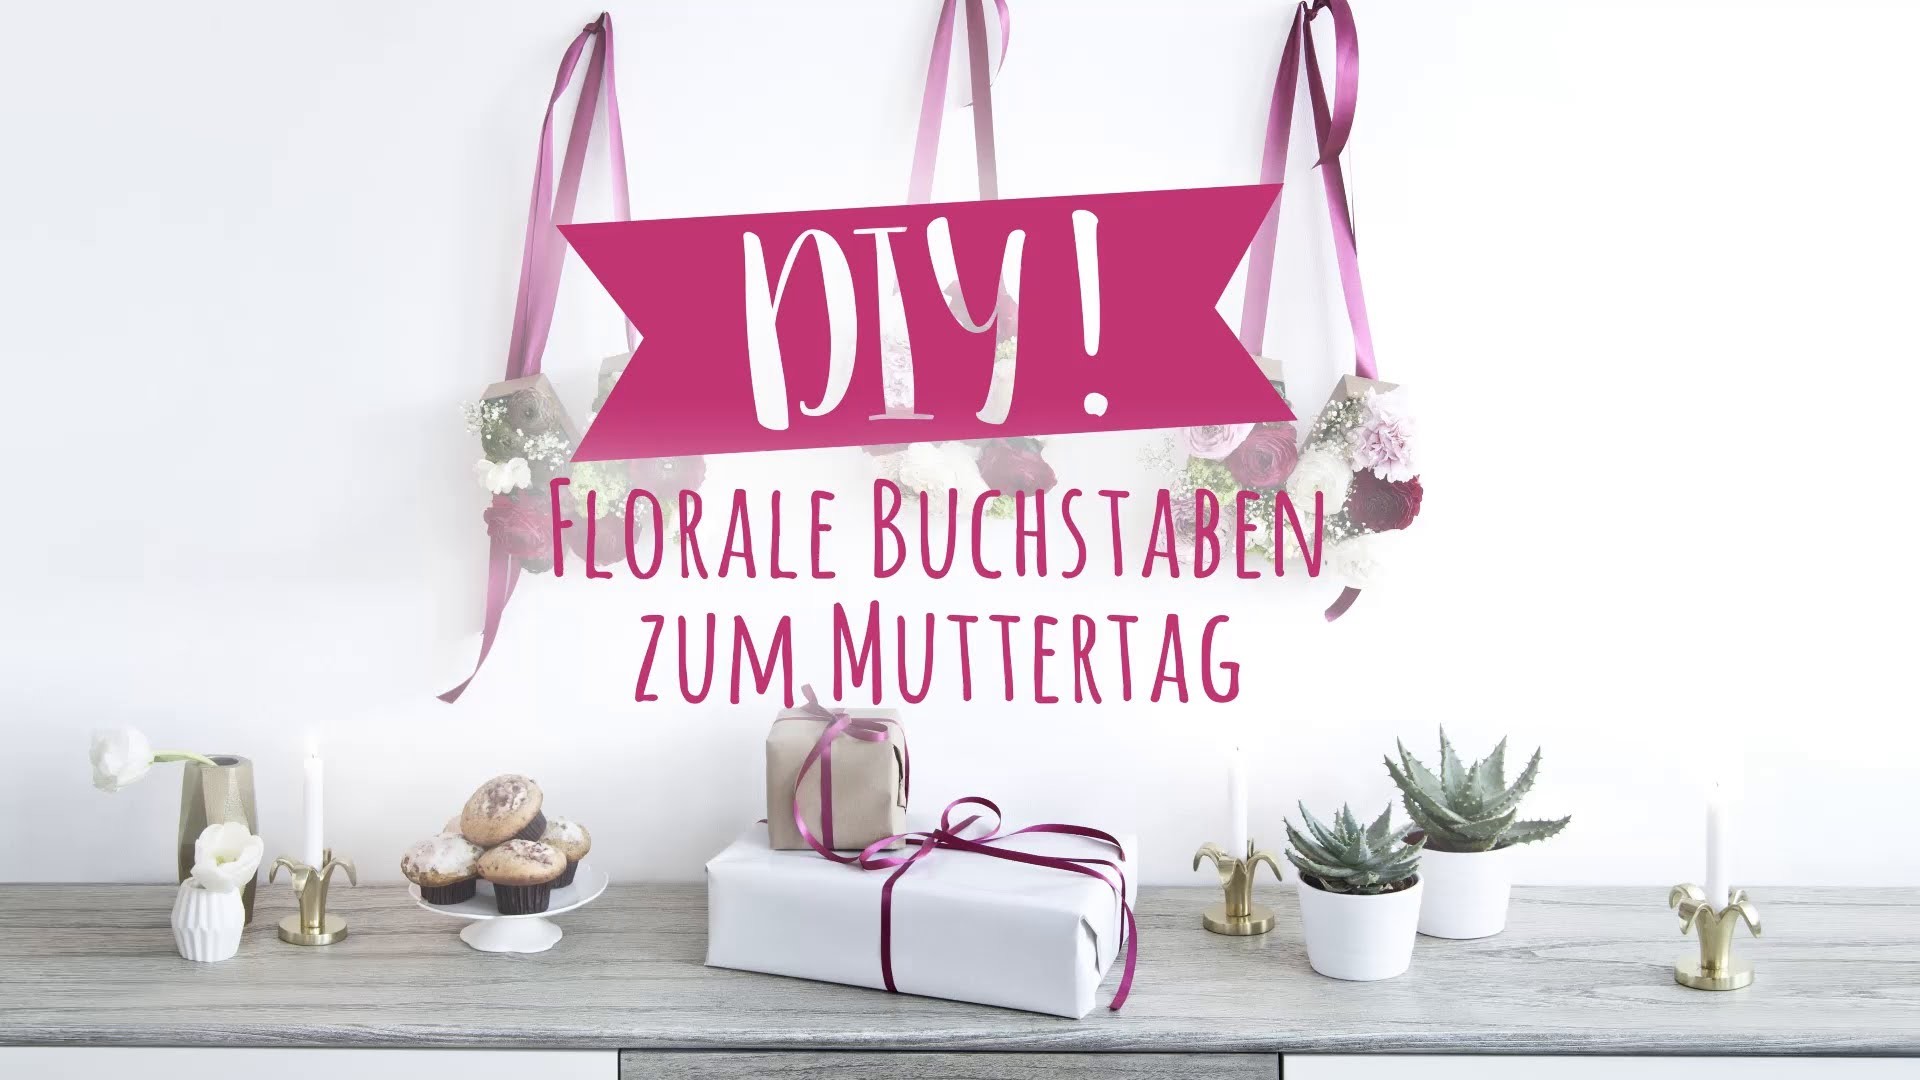 DIY Blumengesteck zum Muttertag | WESTWING DIY-Tipps